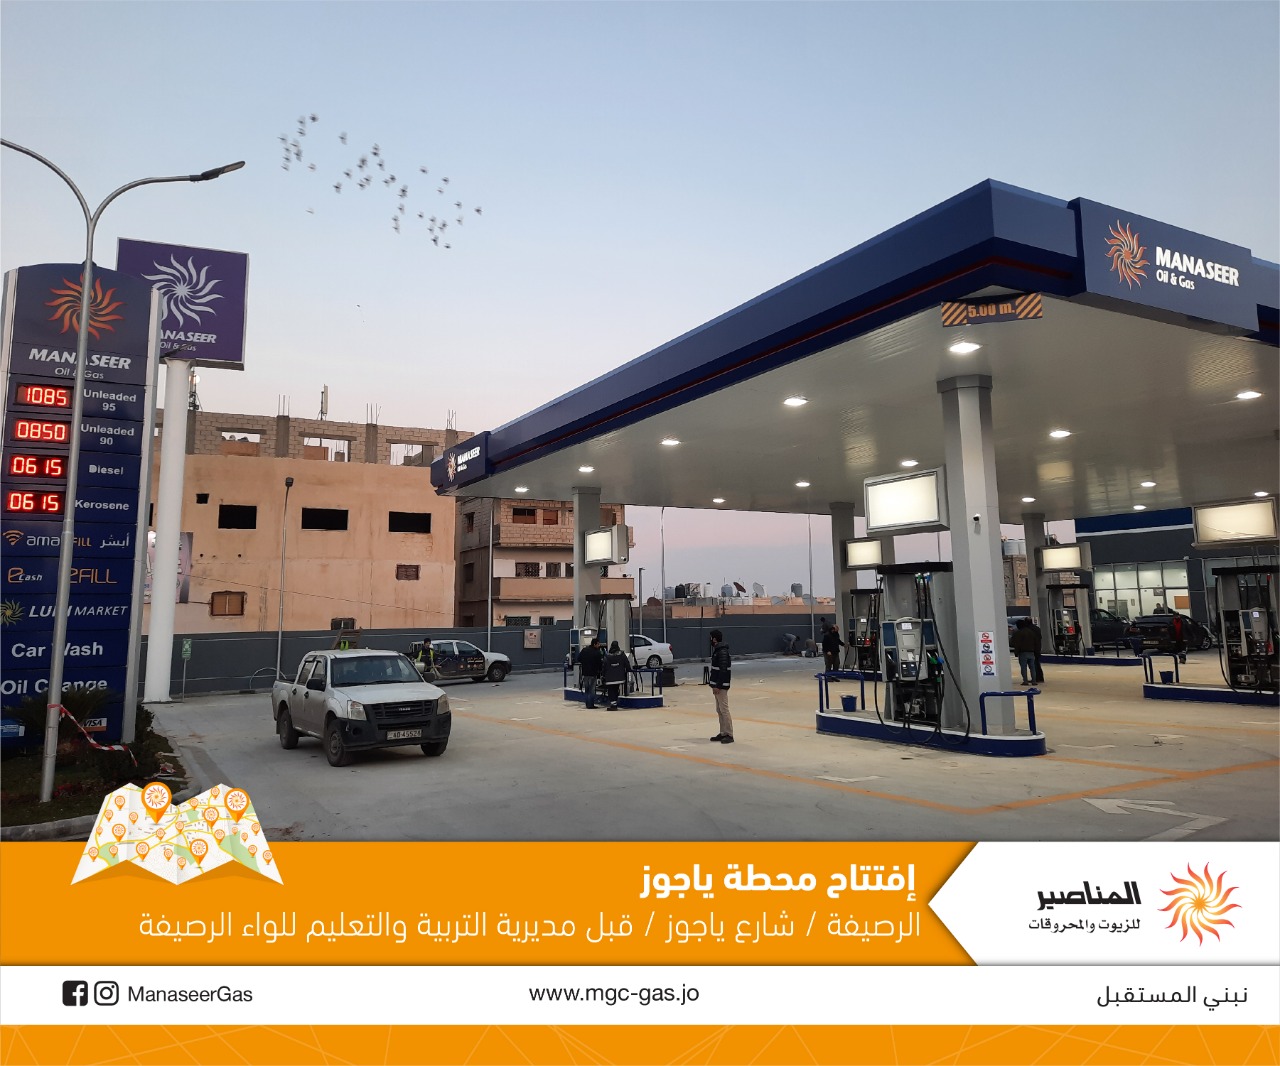 المناصير للزيوت والمحروقات تفتتح محطة وقود جديدة تابعة لها في منطقة الرصيفة